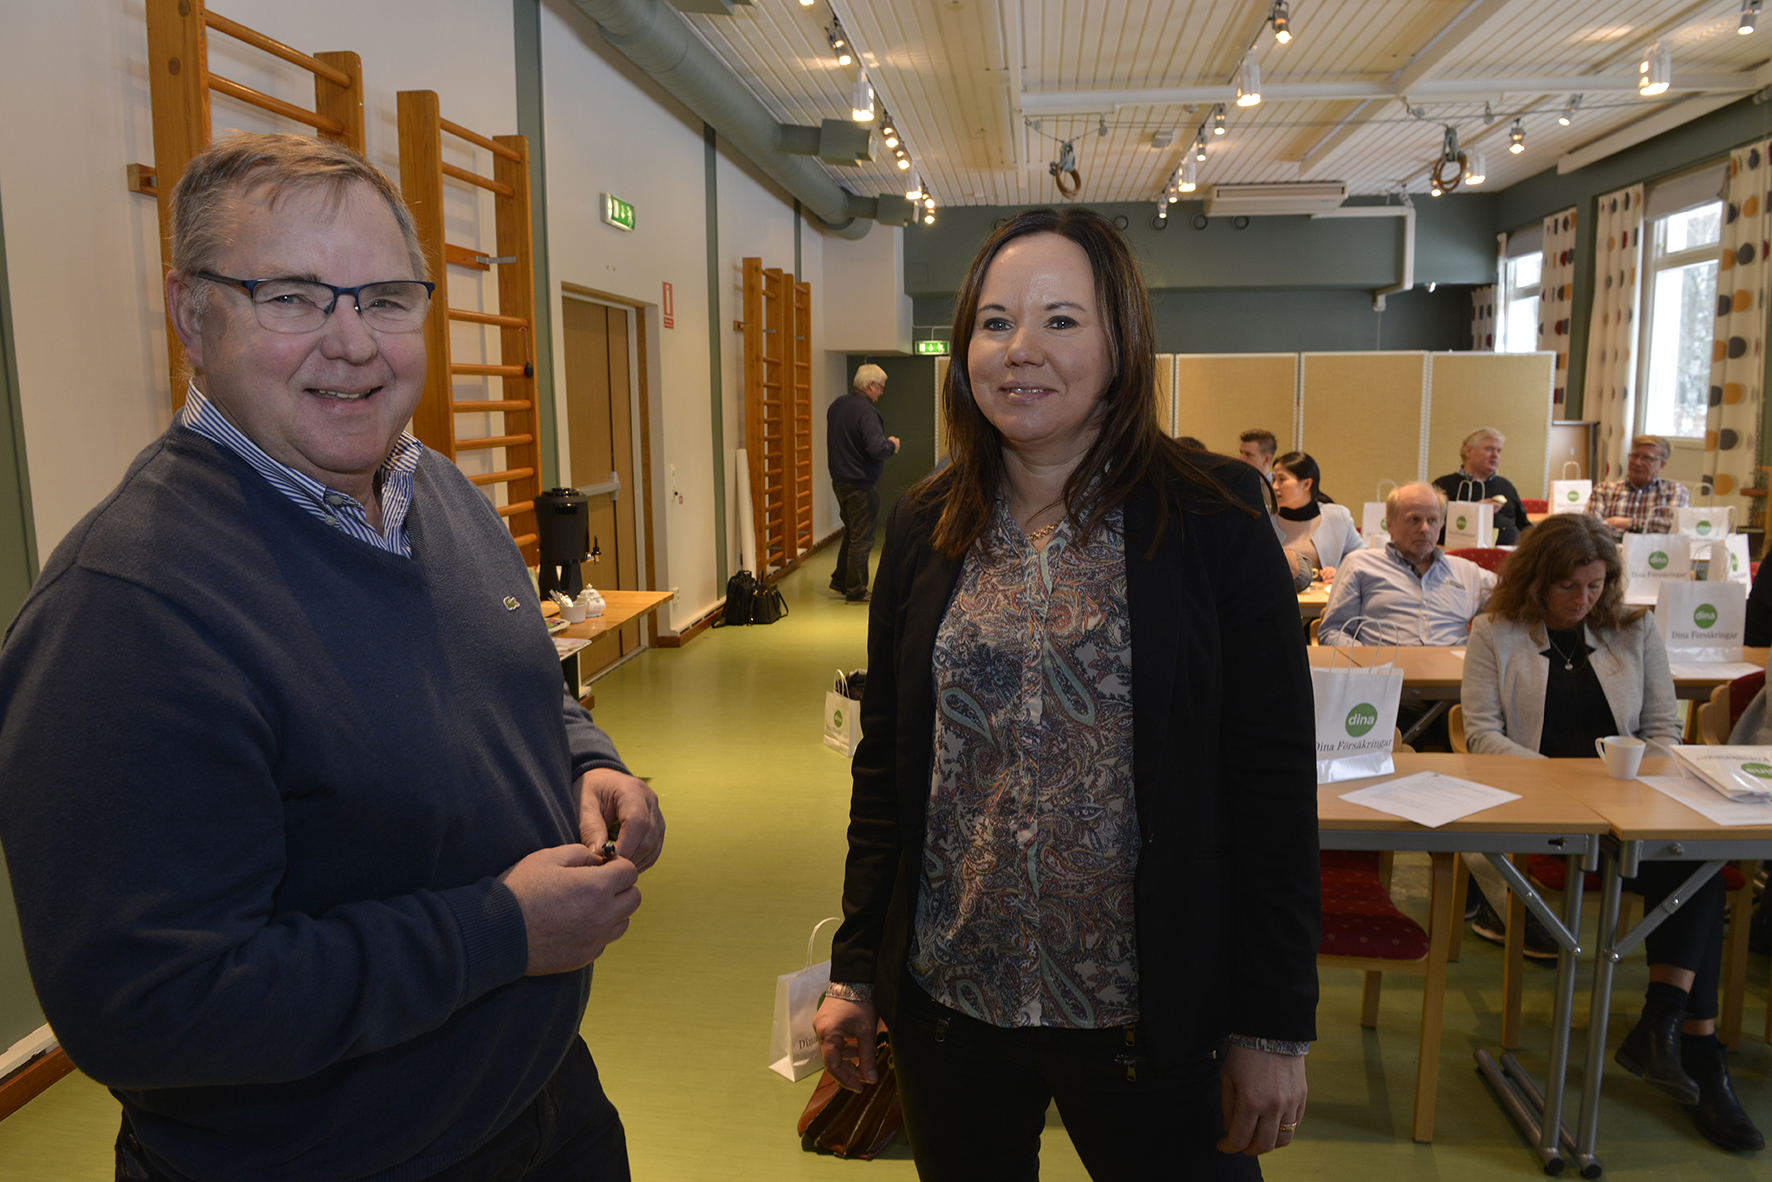 Börje Andersson, rådgivare vid Nyföretagarcentrum i Storfors, i samspråk med kommunens näringslivsutvecklare Kicki Karlsson, under en näringslivsfrukost.